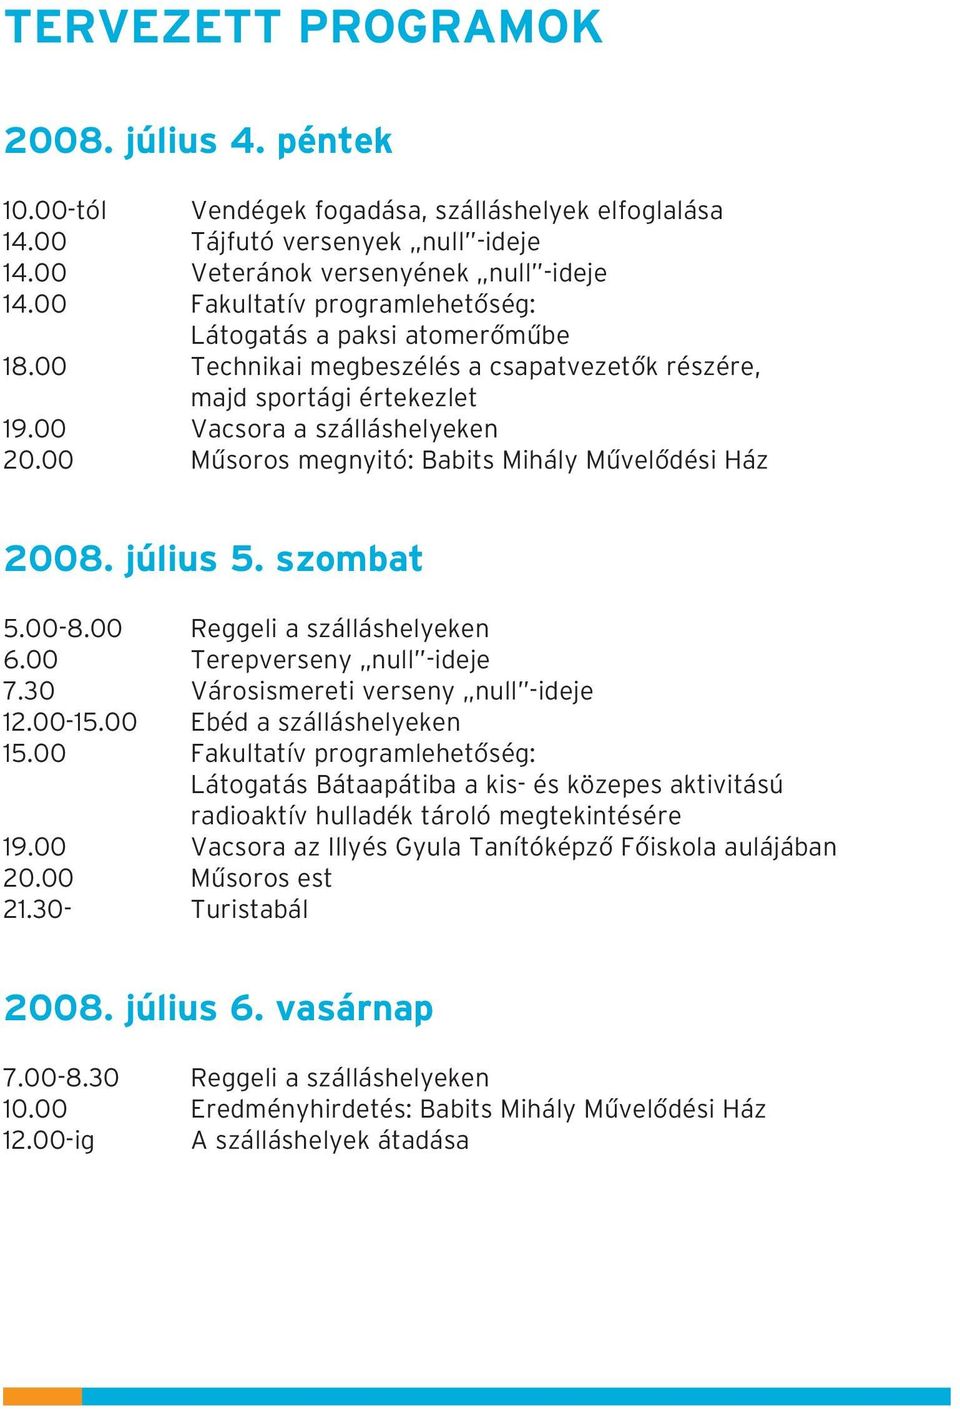 00 Mûsoros megnyitó: Babits Mihály Mûvelõdési Ház 2008. július 5. szombat 5.00-8.00 Reggeli a szálláshelyeken 6.00 Terepverseny null -ideje 7.30 Városismereti verseny null -ideje 12.00-15.